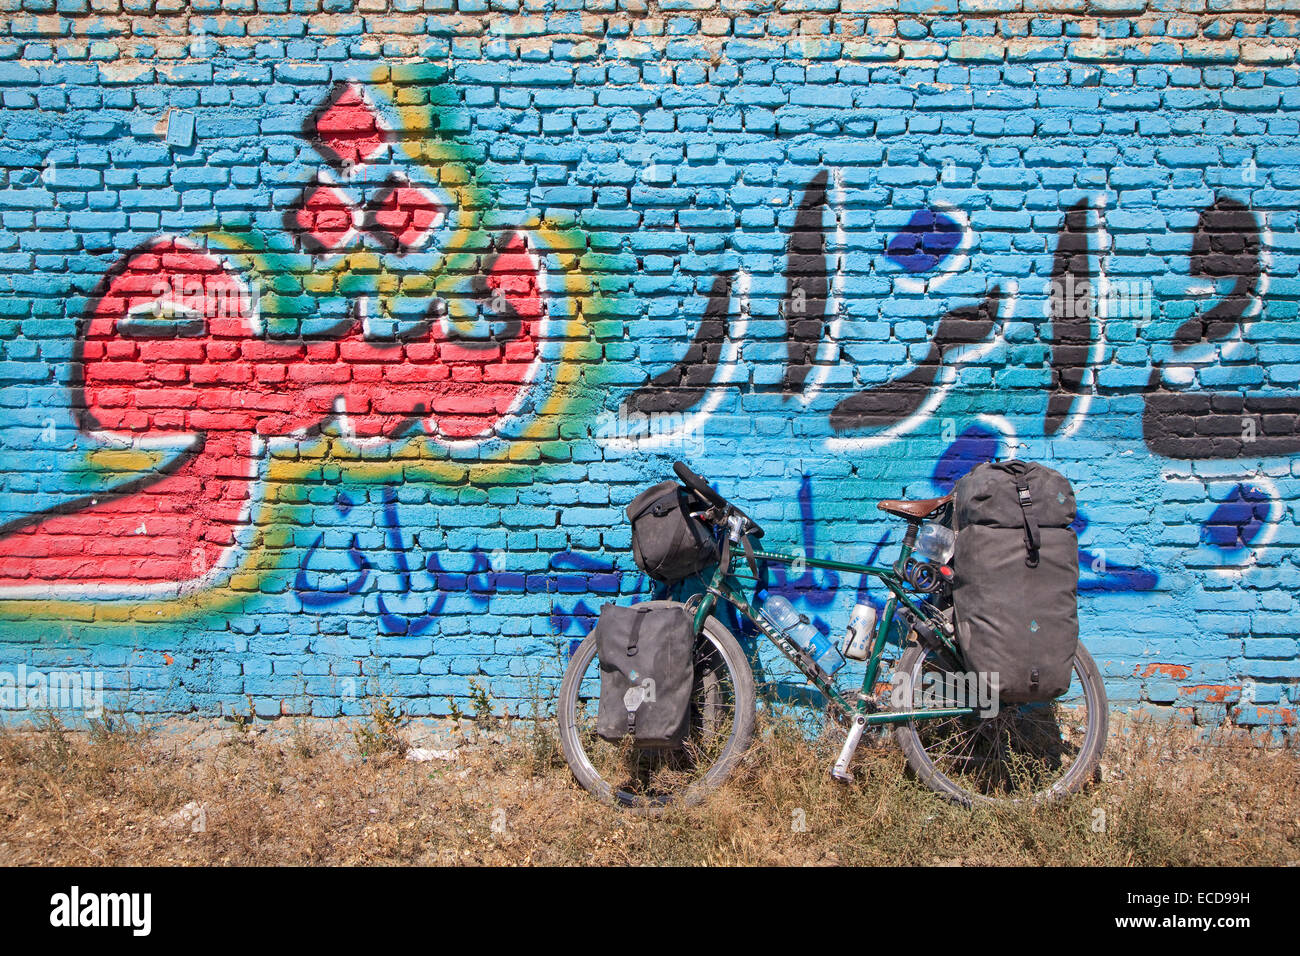 Touring Fahrrad mit Wasserflaschen in Käfigen, umfasste vier Packtaschen und eine Lenkertasche vor Graffiti Wand, Iran Stockfoto